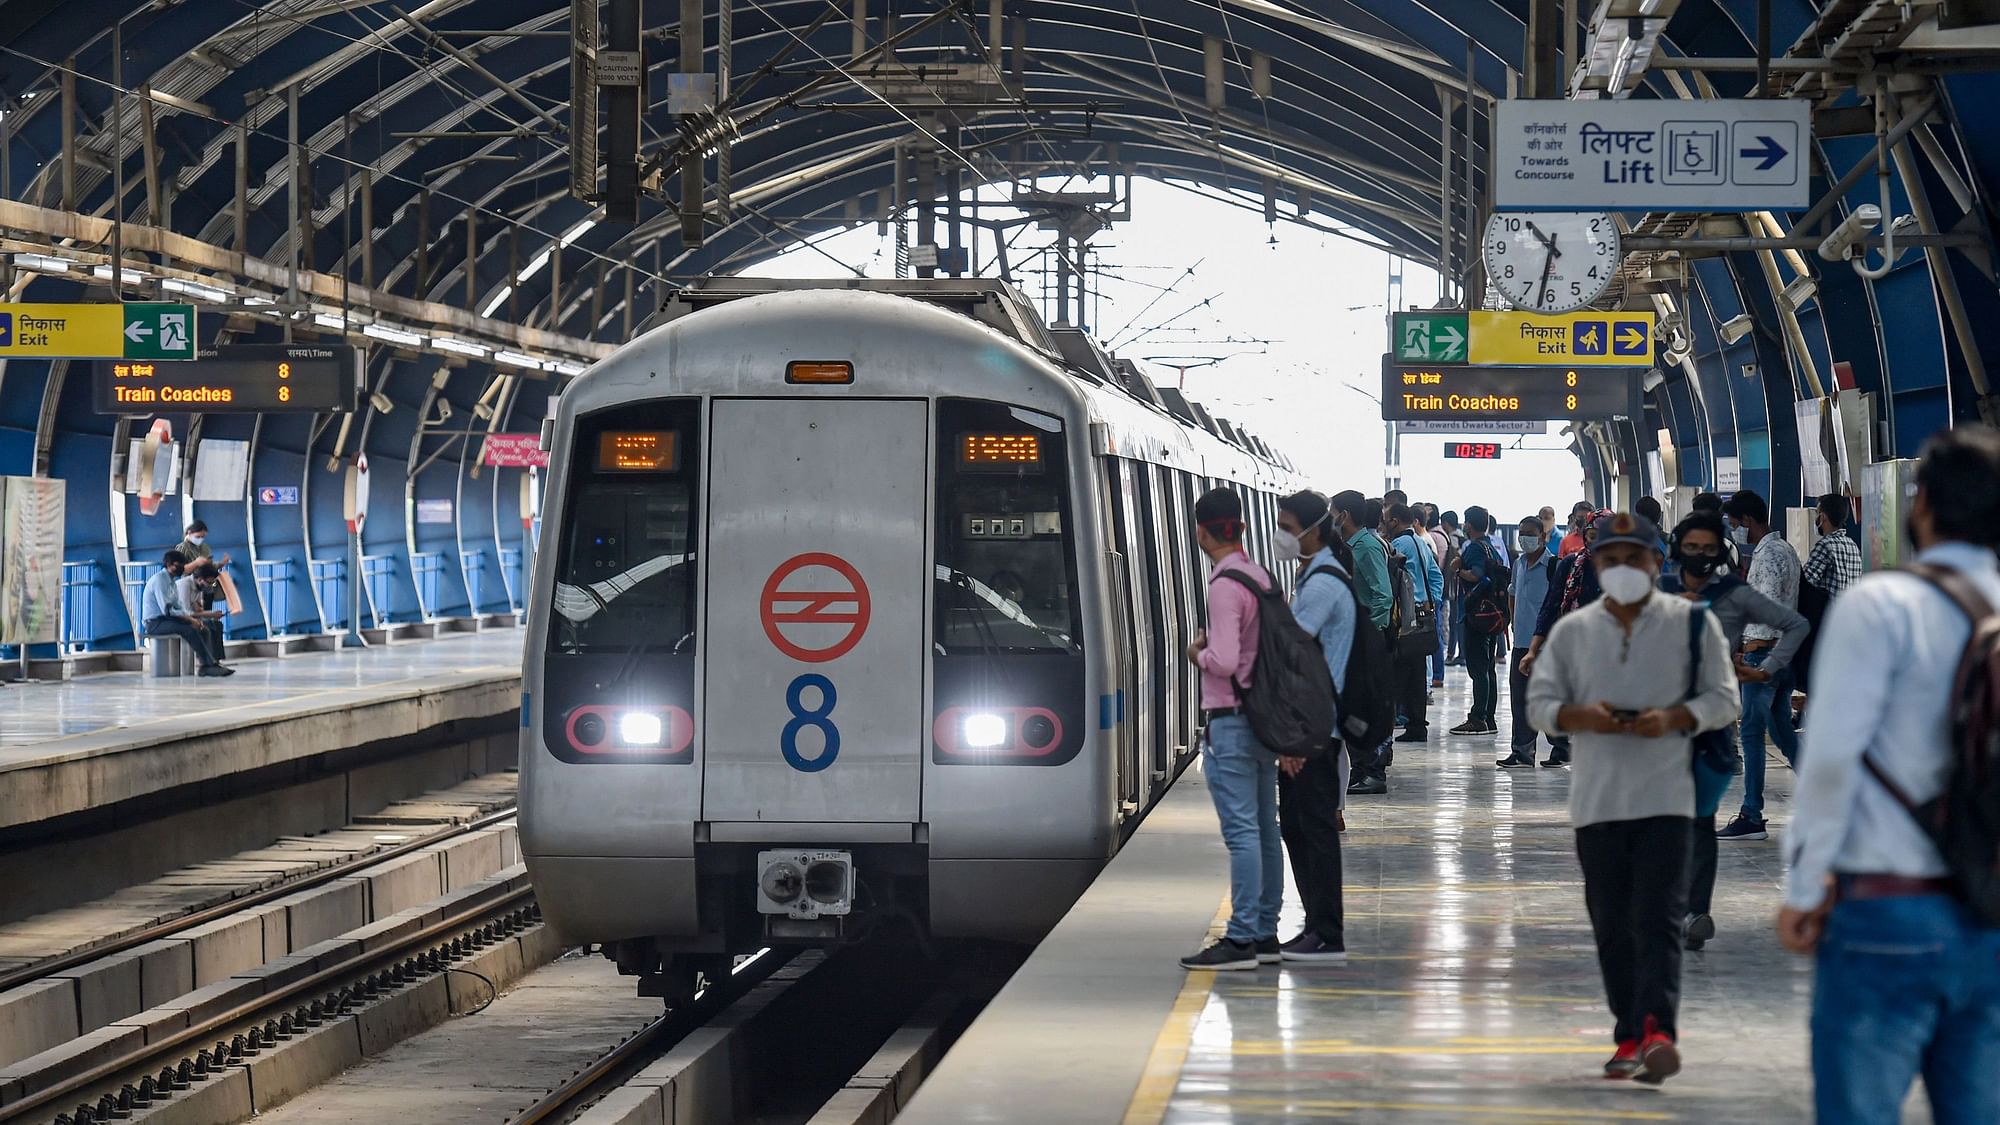 <div class="paragraphs"><p>दिल्ली: मेट्रो स्टेशन पर महिला के साथ यौन दुर्व्यवहार, कहा- पुलिस ने मदद नहीं की</p></div>